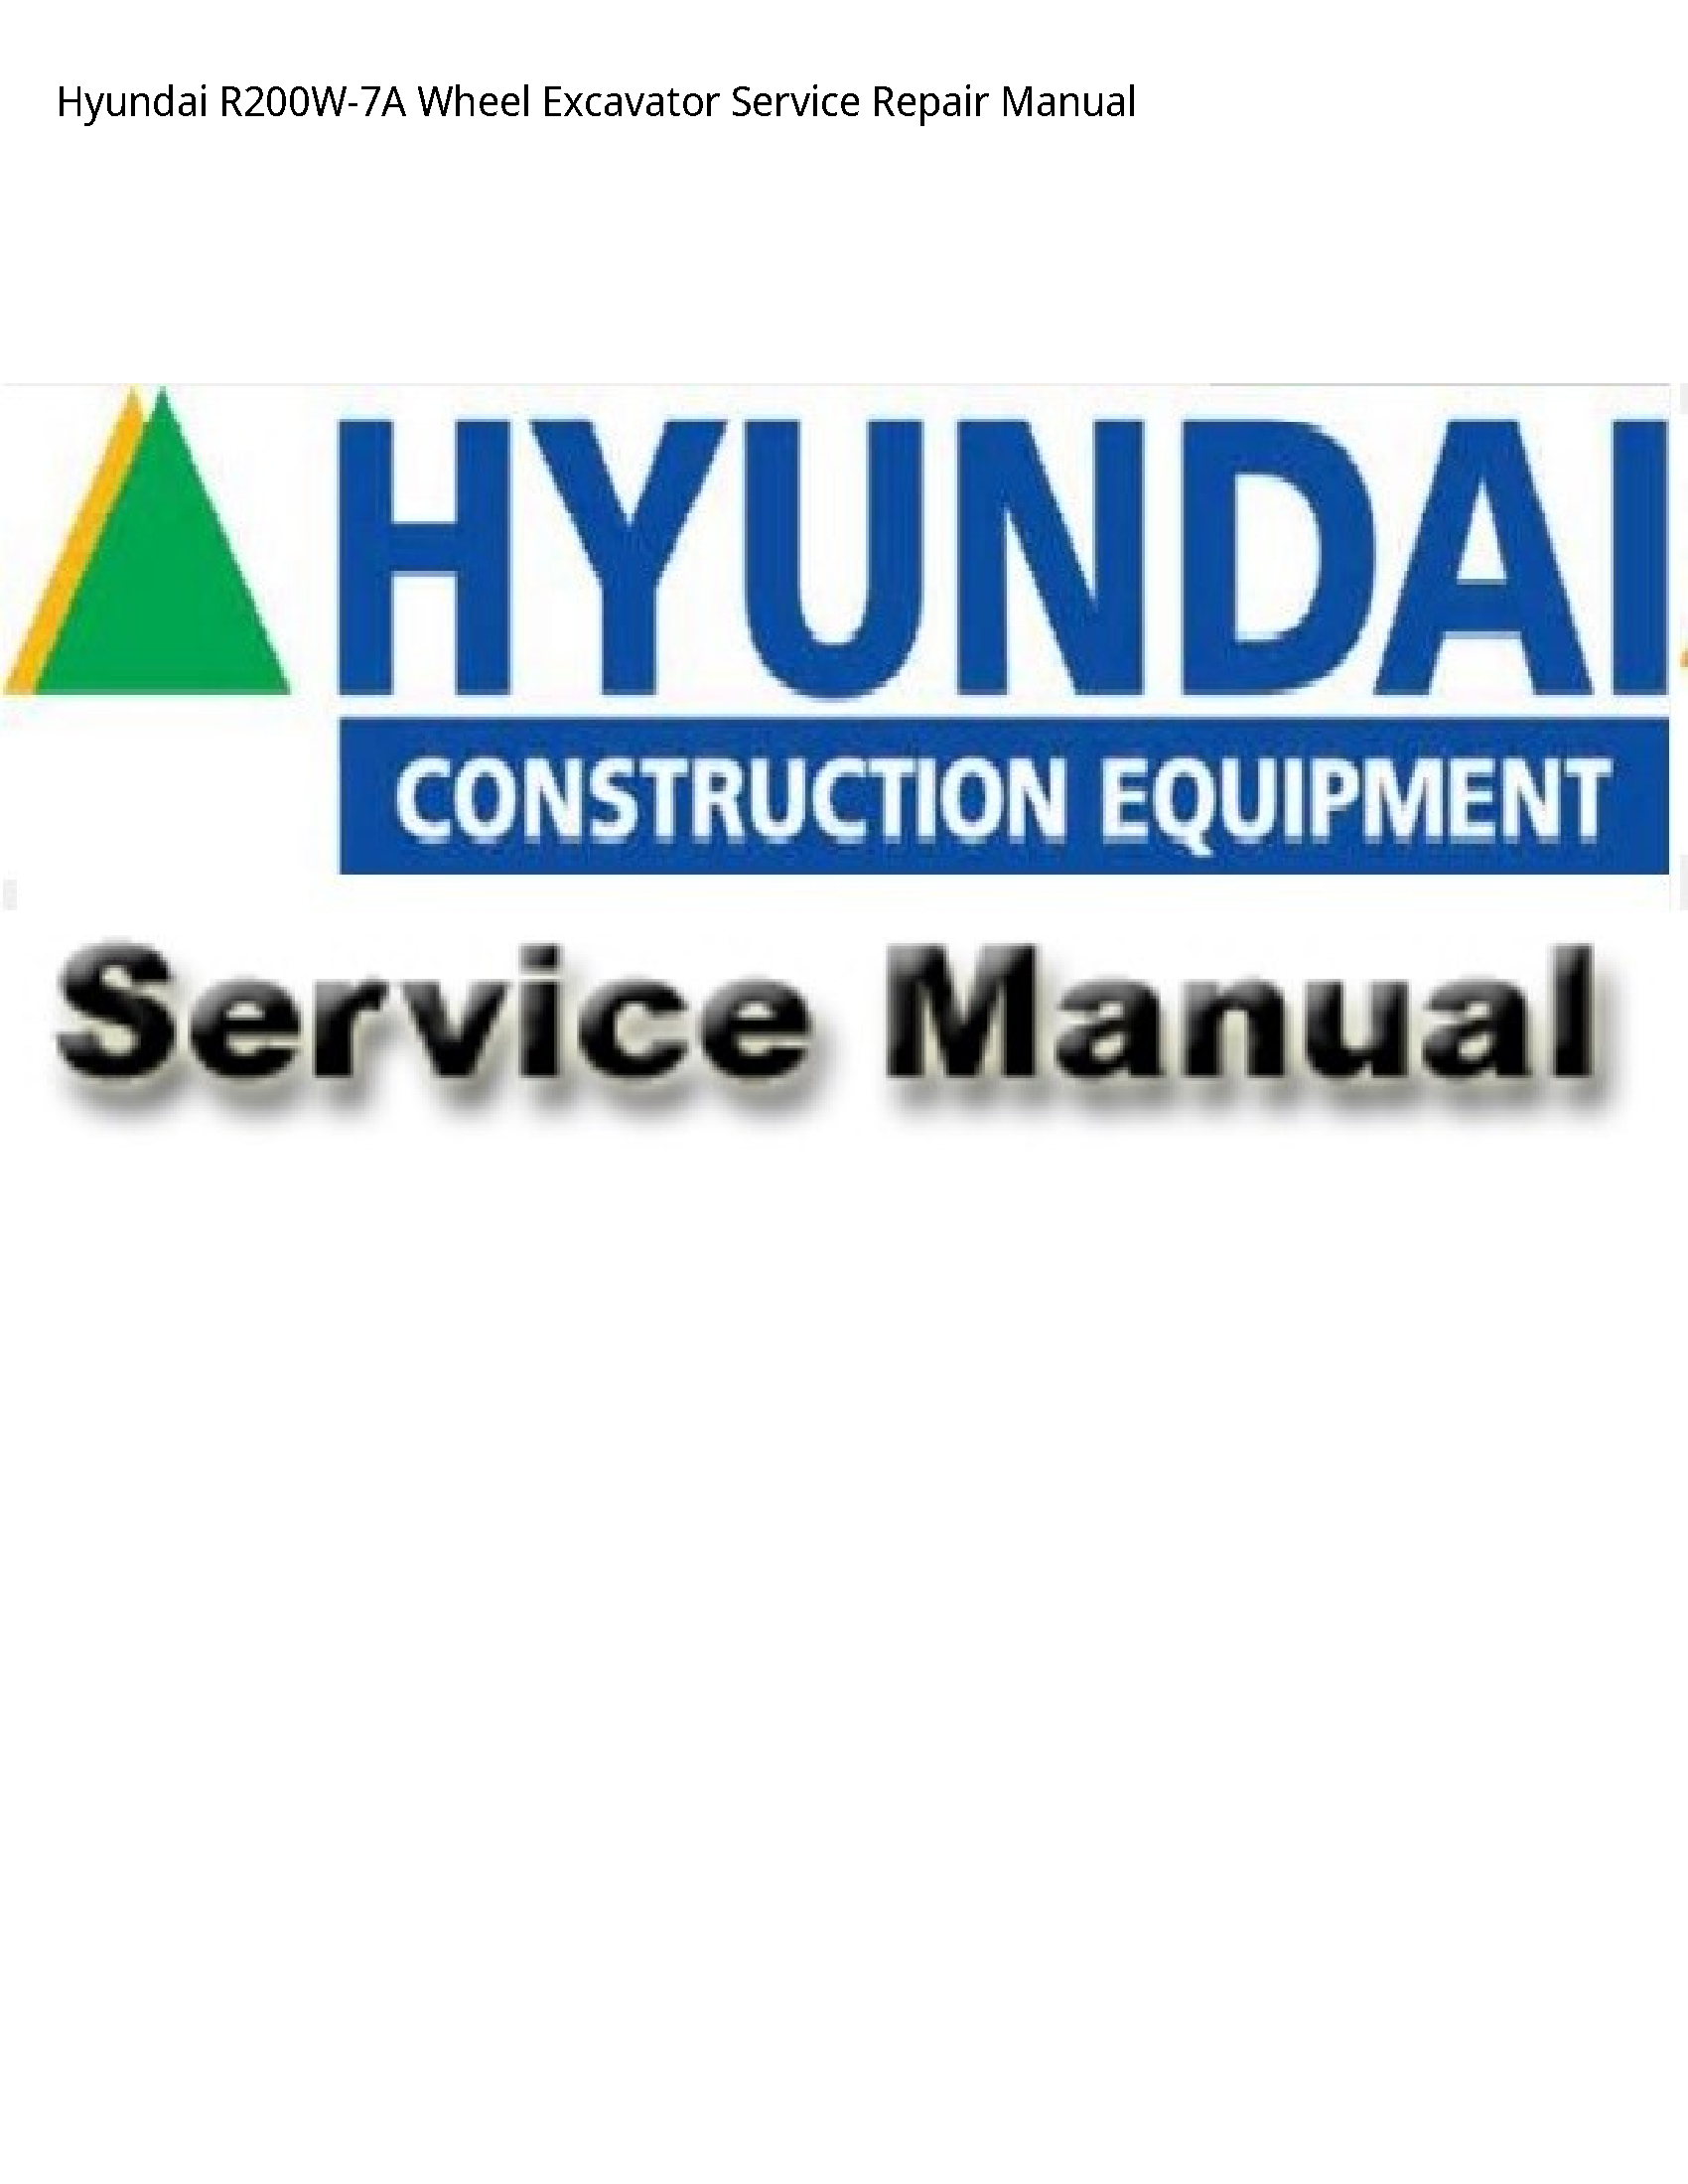 Hyundai R200W-7A Wheel Excavator manual